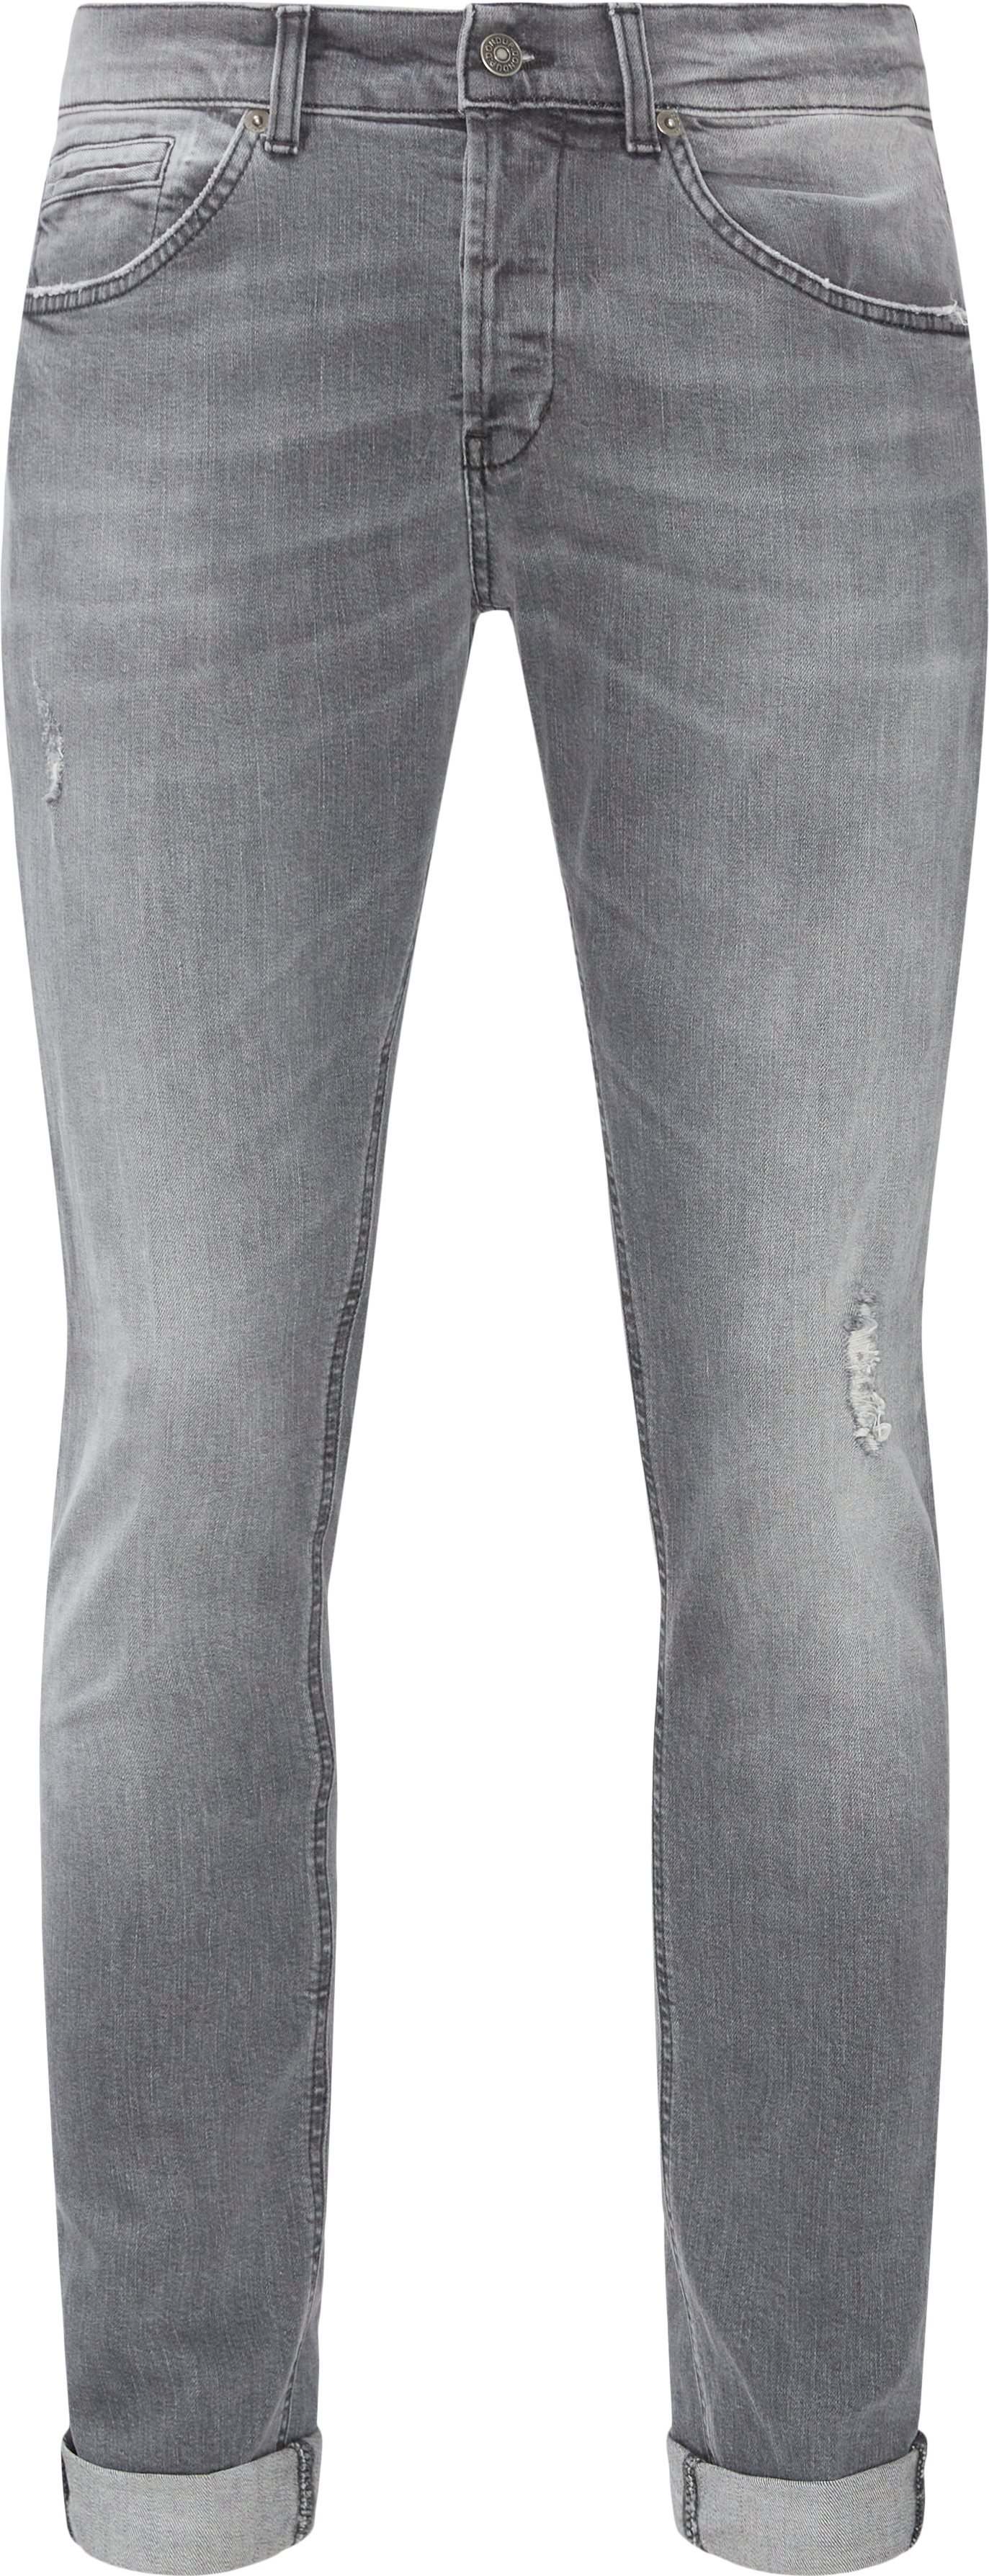 Jeans - Slim fit - Grey